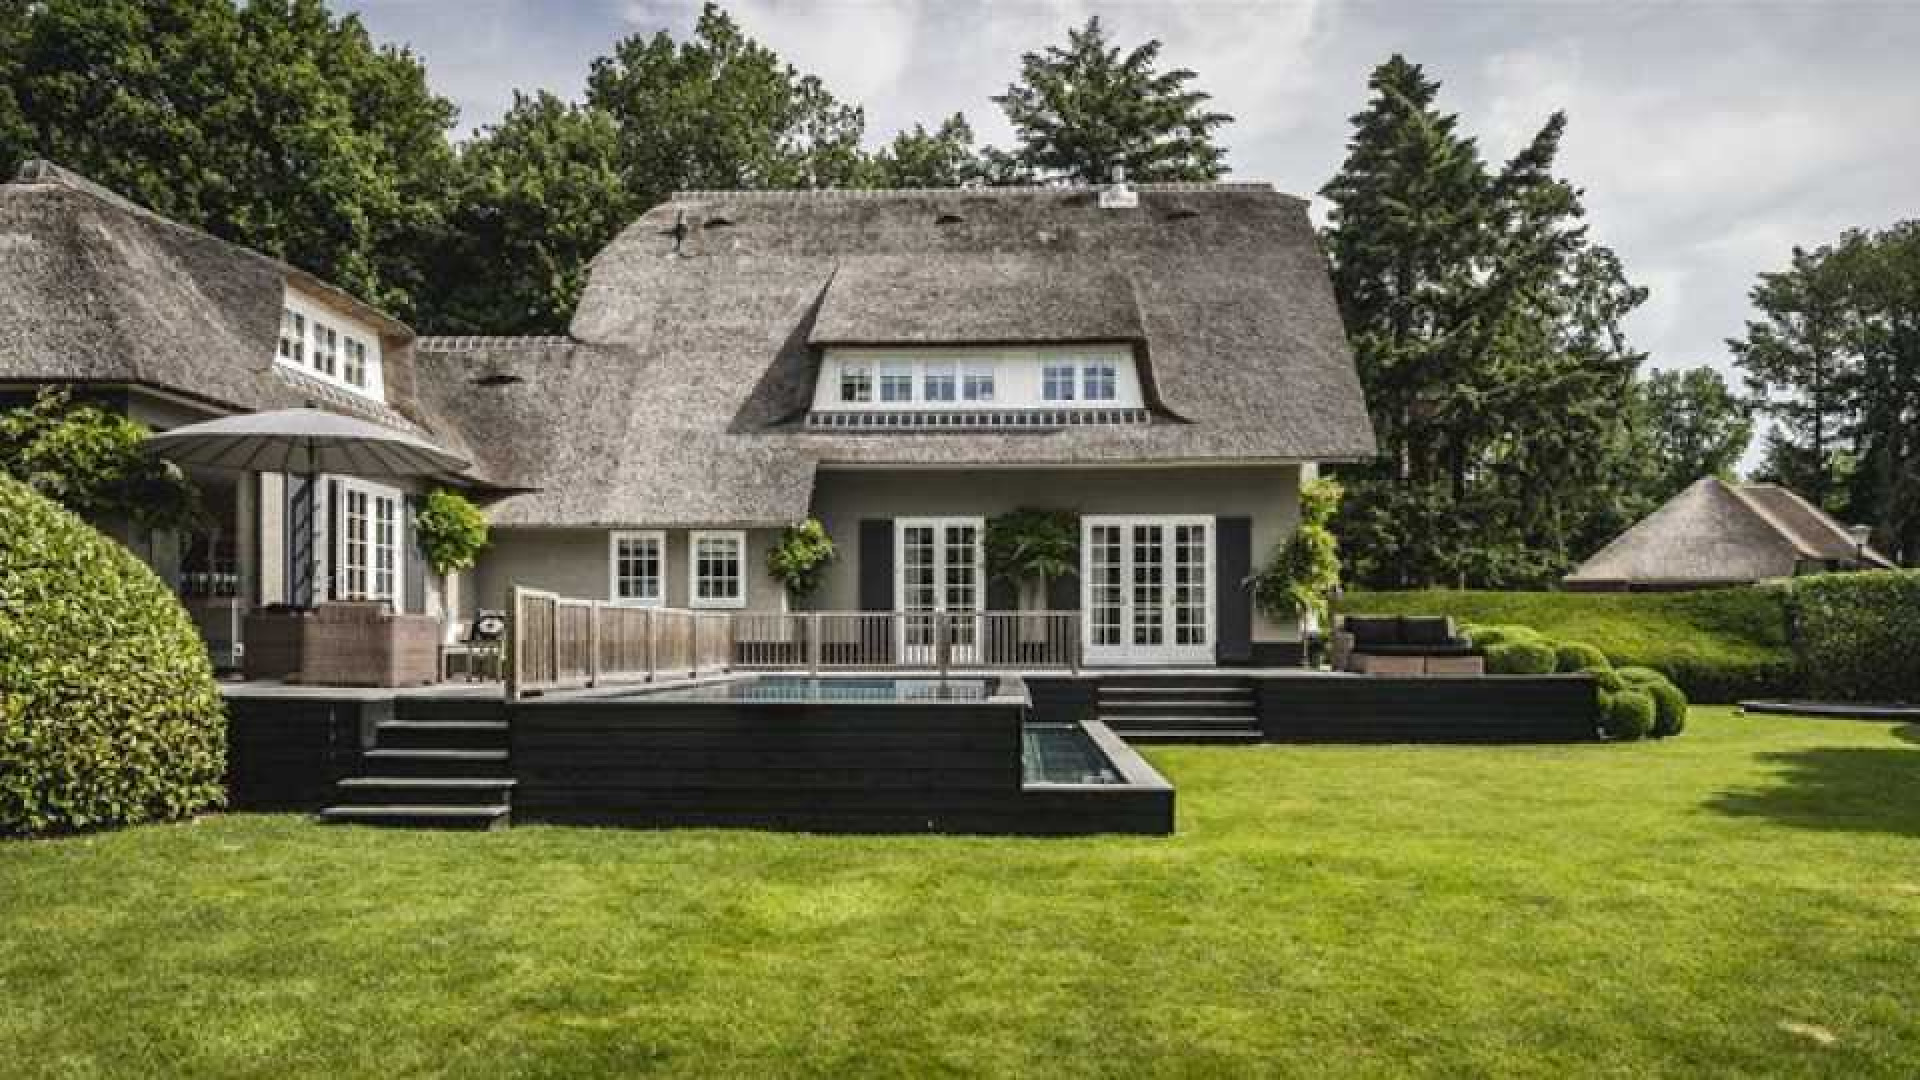 Winston en Renate Gerschtanowitz halen hun miljoenen villa uit de verkoop. Zie foto's 2